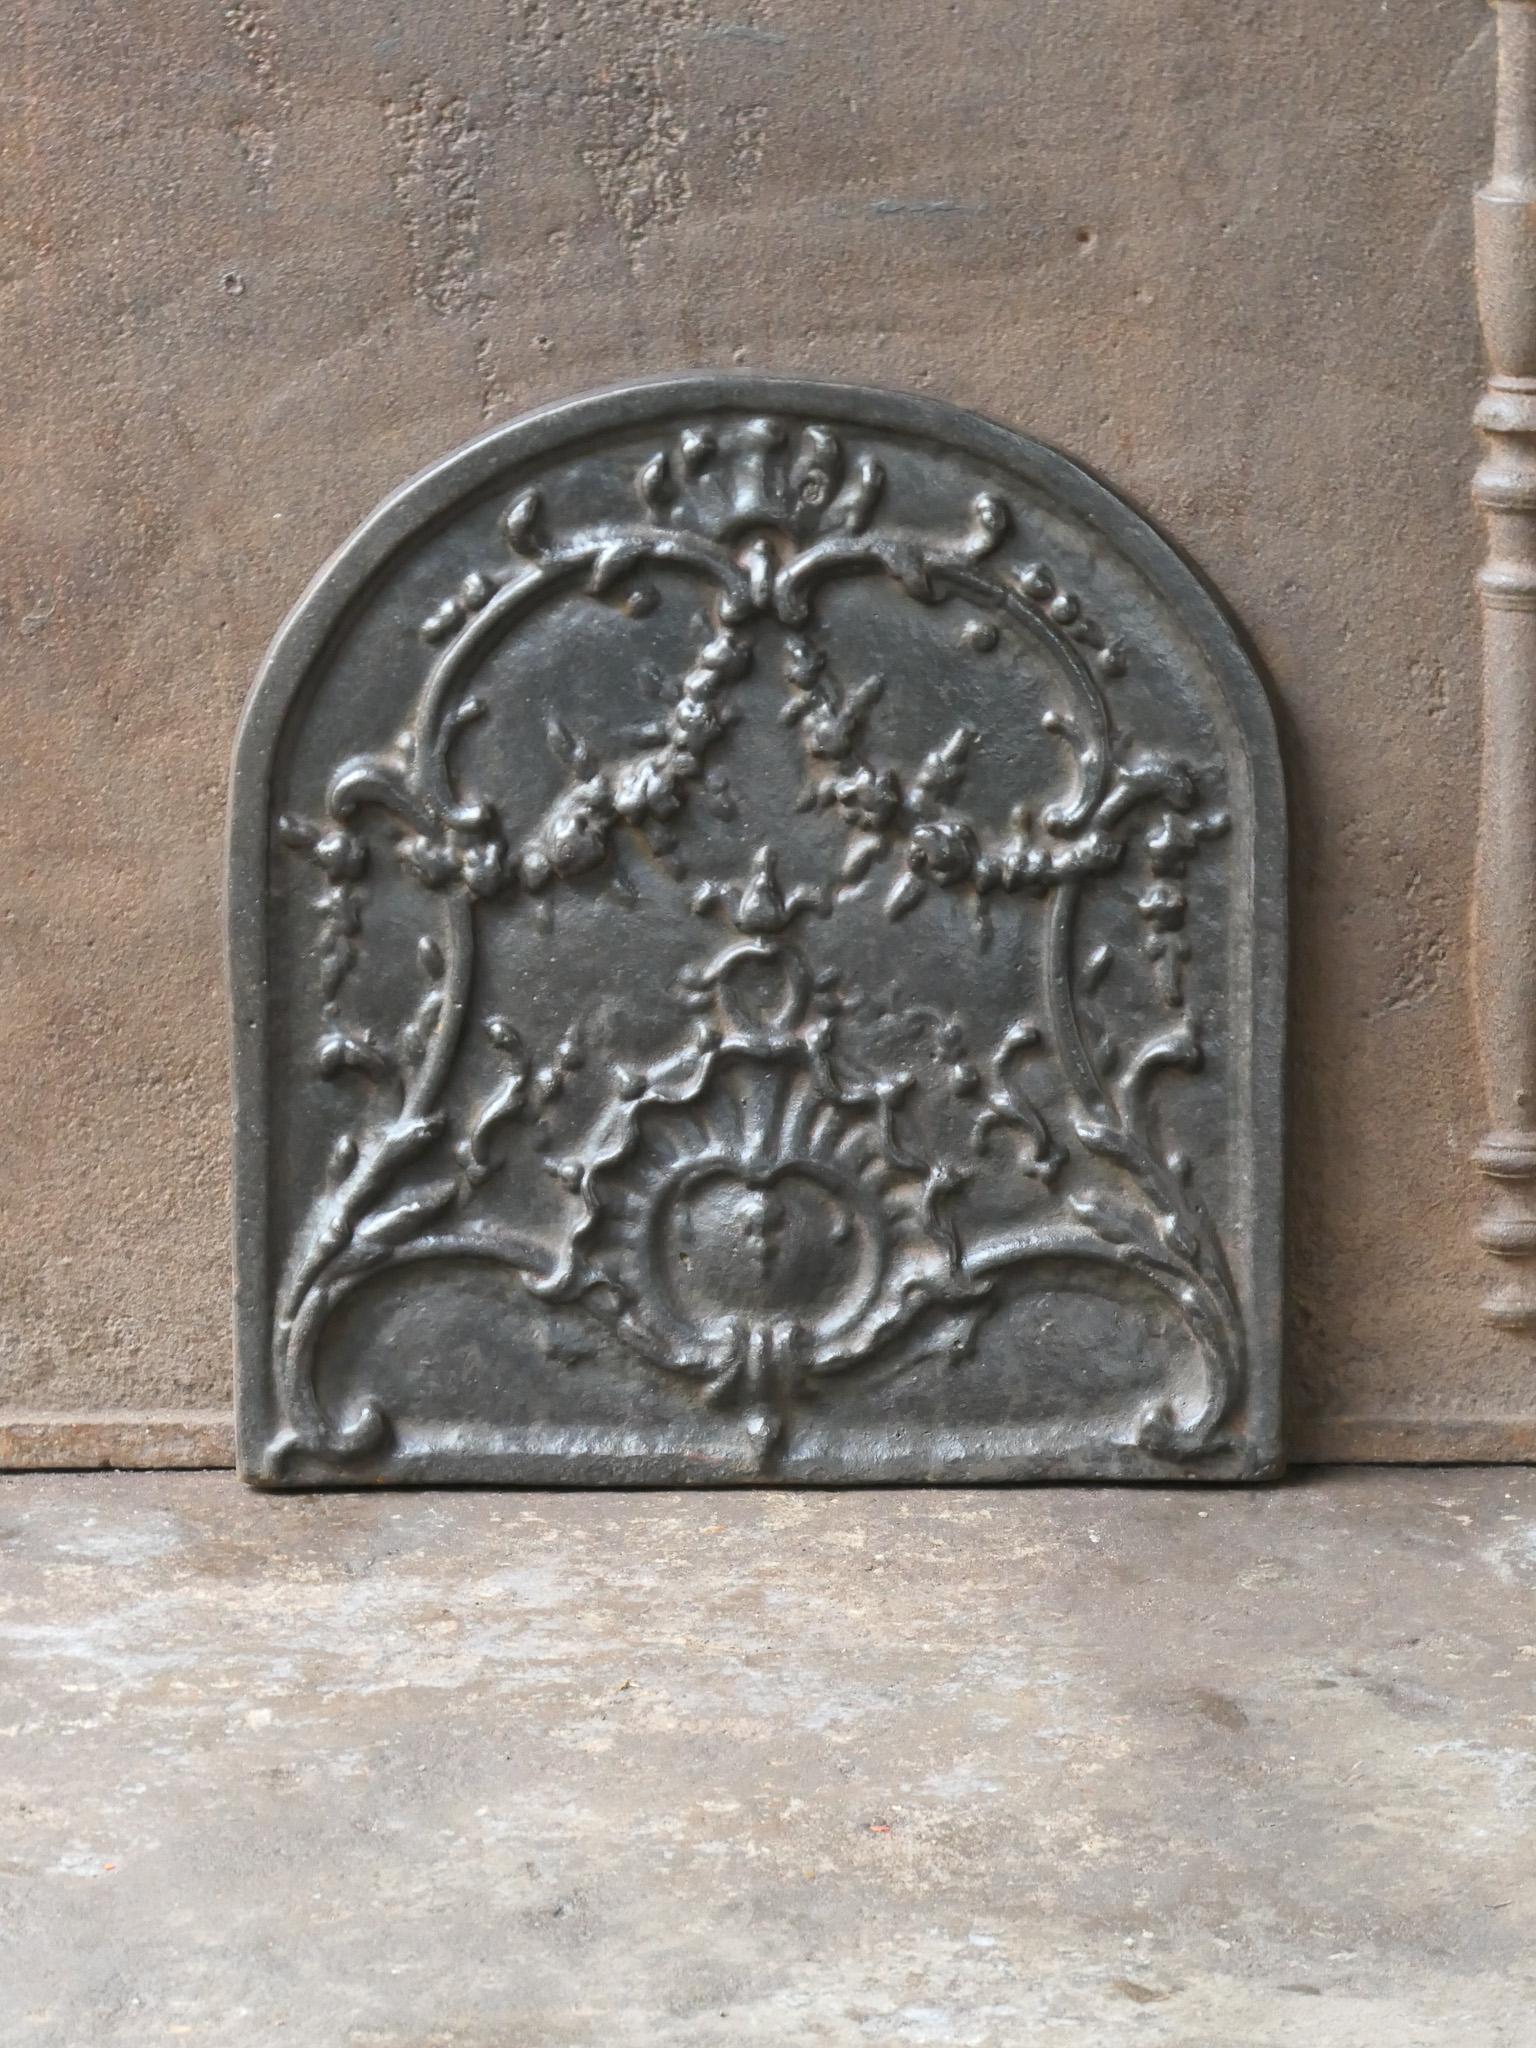 Plaque de cheminée française du 20e siècle de style Louis XV avec une décoration typique de Louis XV.

La plaque de cheminée est en fonte et a une patine brune naturelle. Sur demande, elle peut être fabriquée en noir ou en étain, avec un vernis à